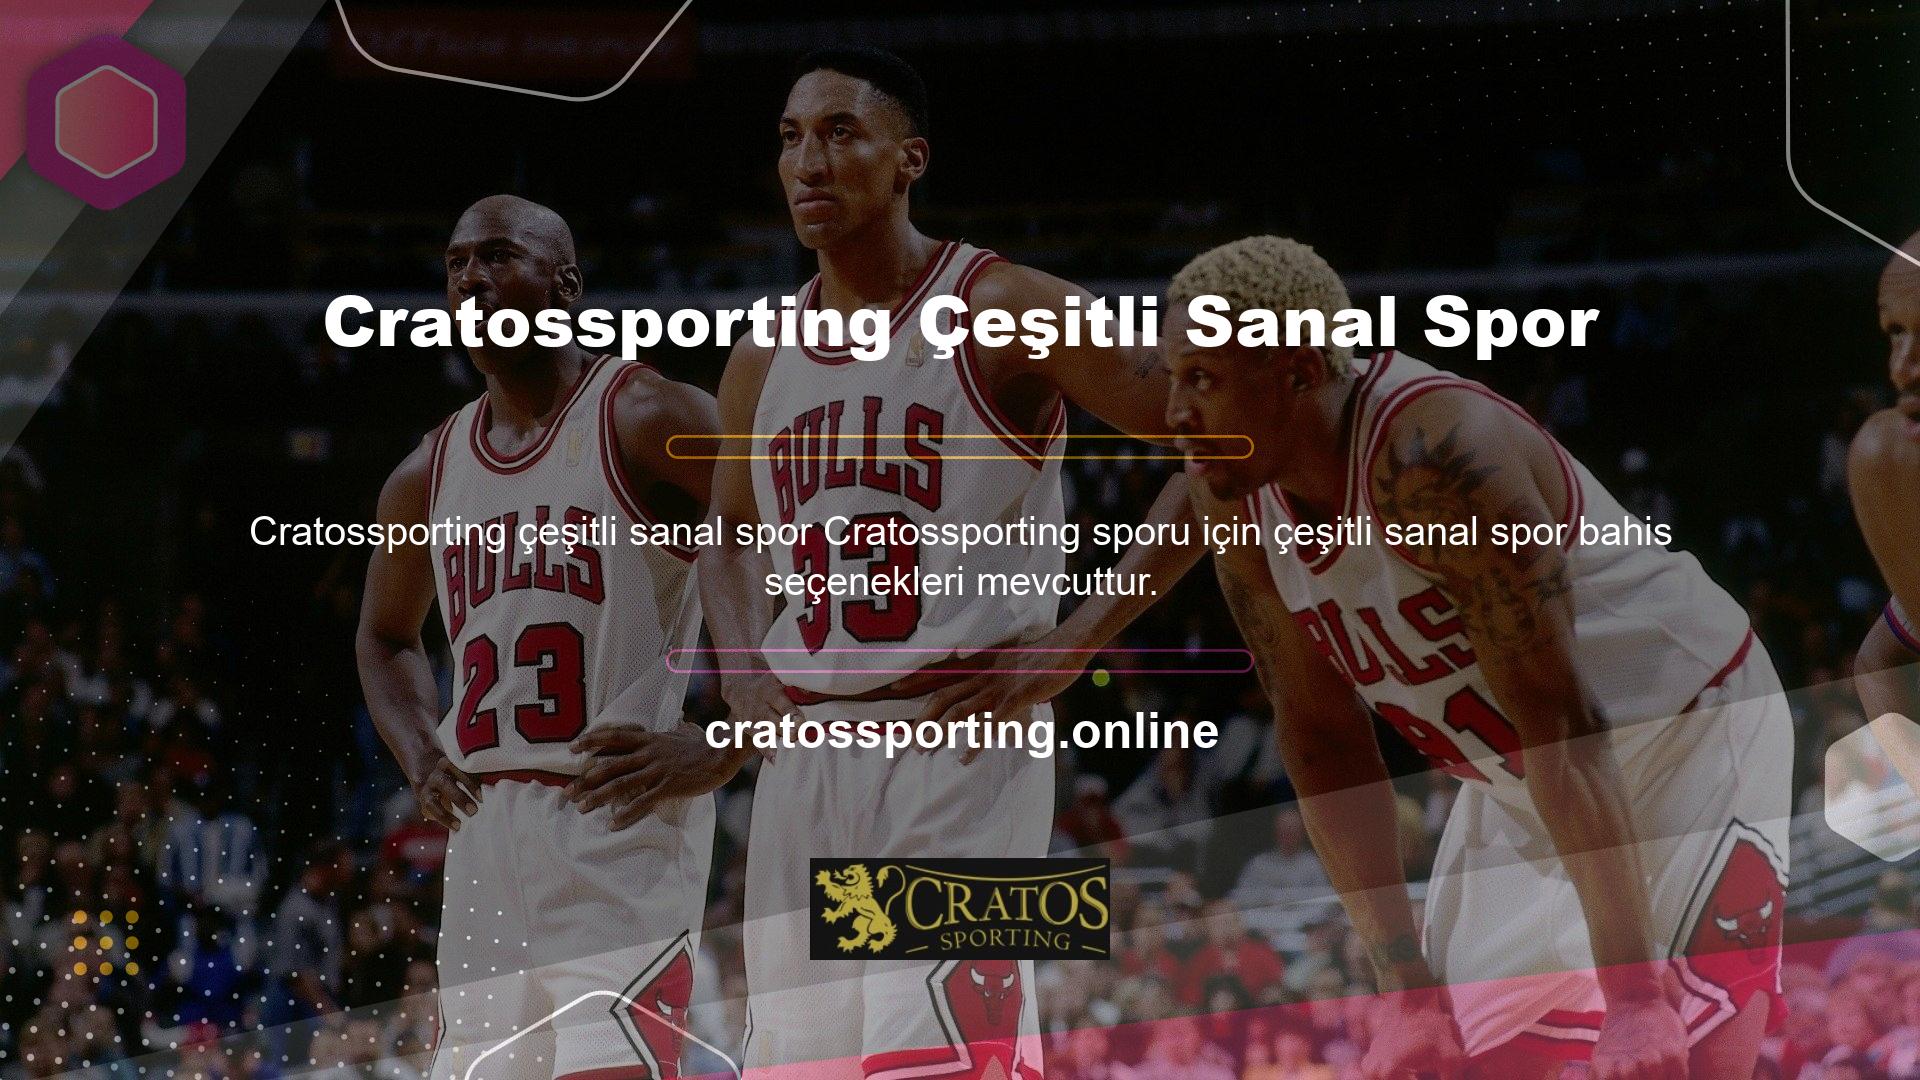 Süreç nedir? Cratossporting, kullanıcılara kapsamlı sanal spor bahis hizmetleri sunan bir çevrimiçi bahis sitesidir